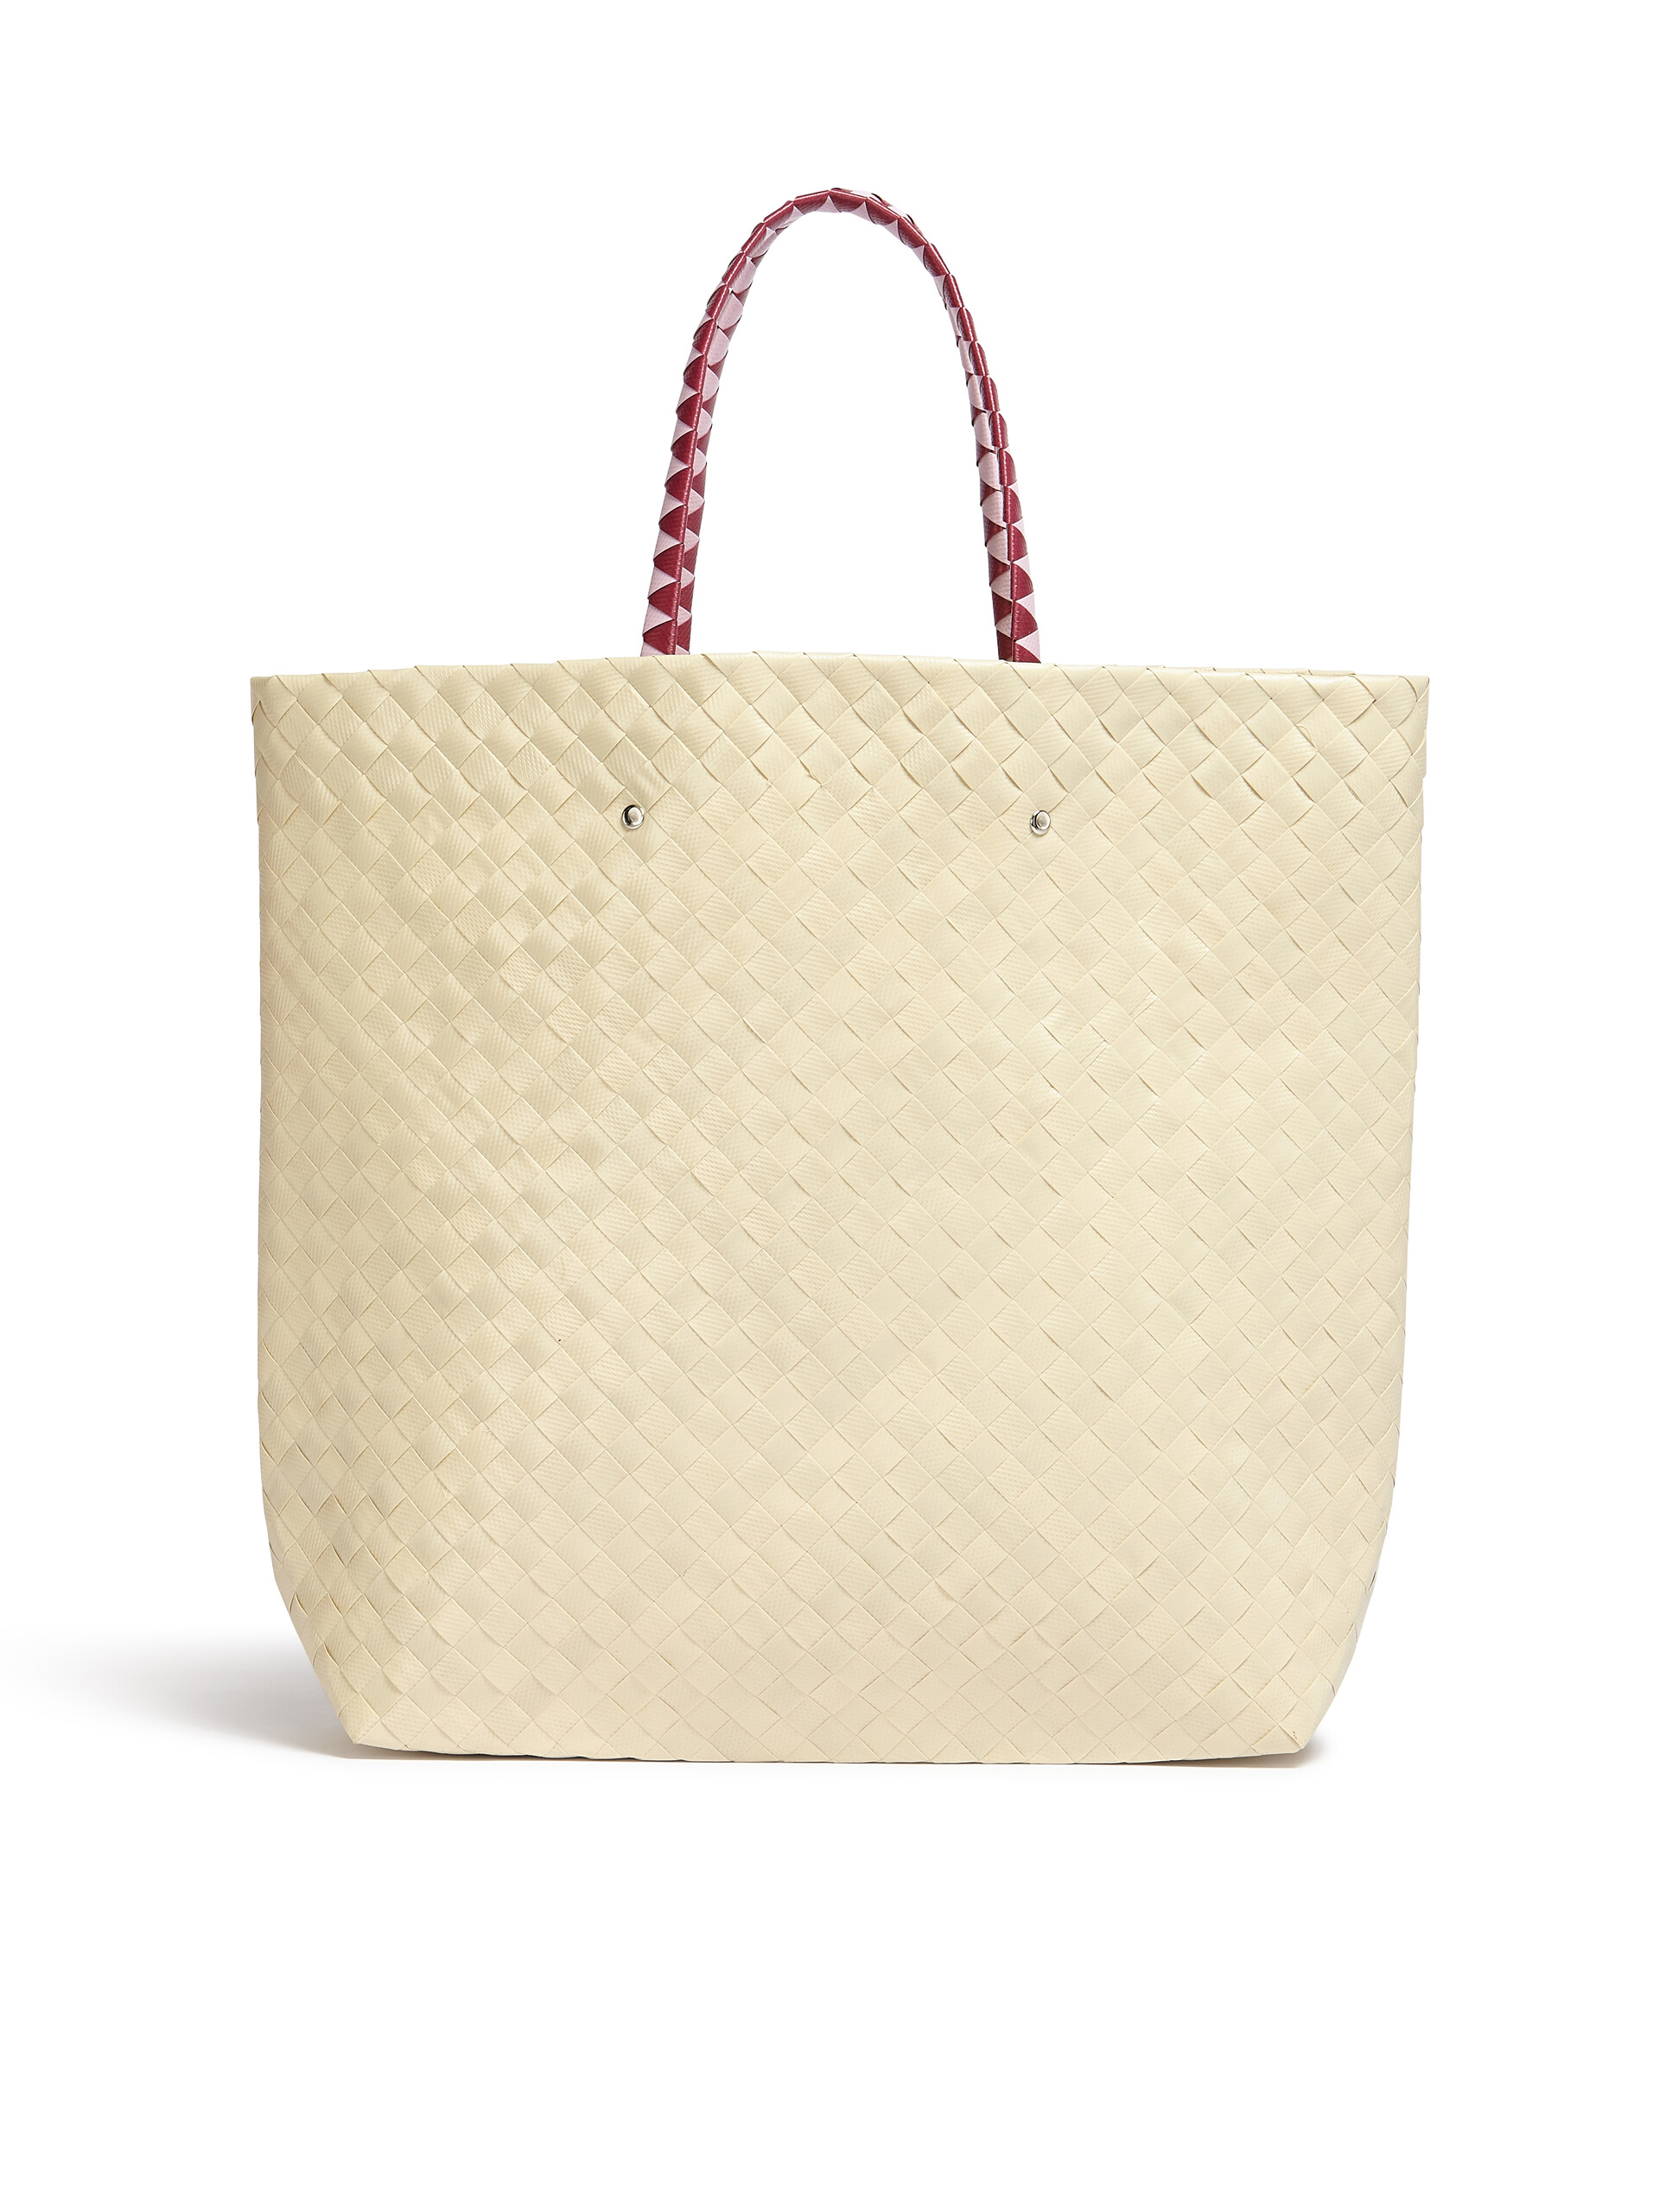 MARNI MARKET BORA medium bag in white flower motif - Bags - Image 3